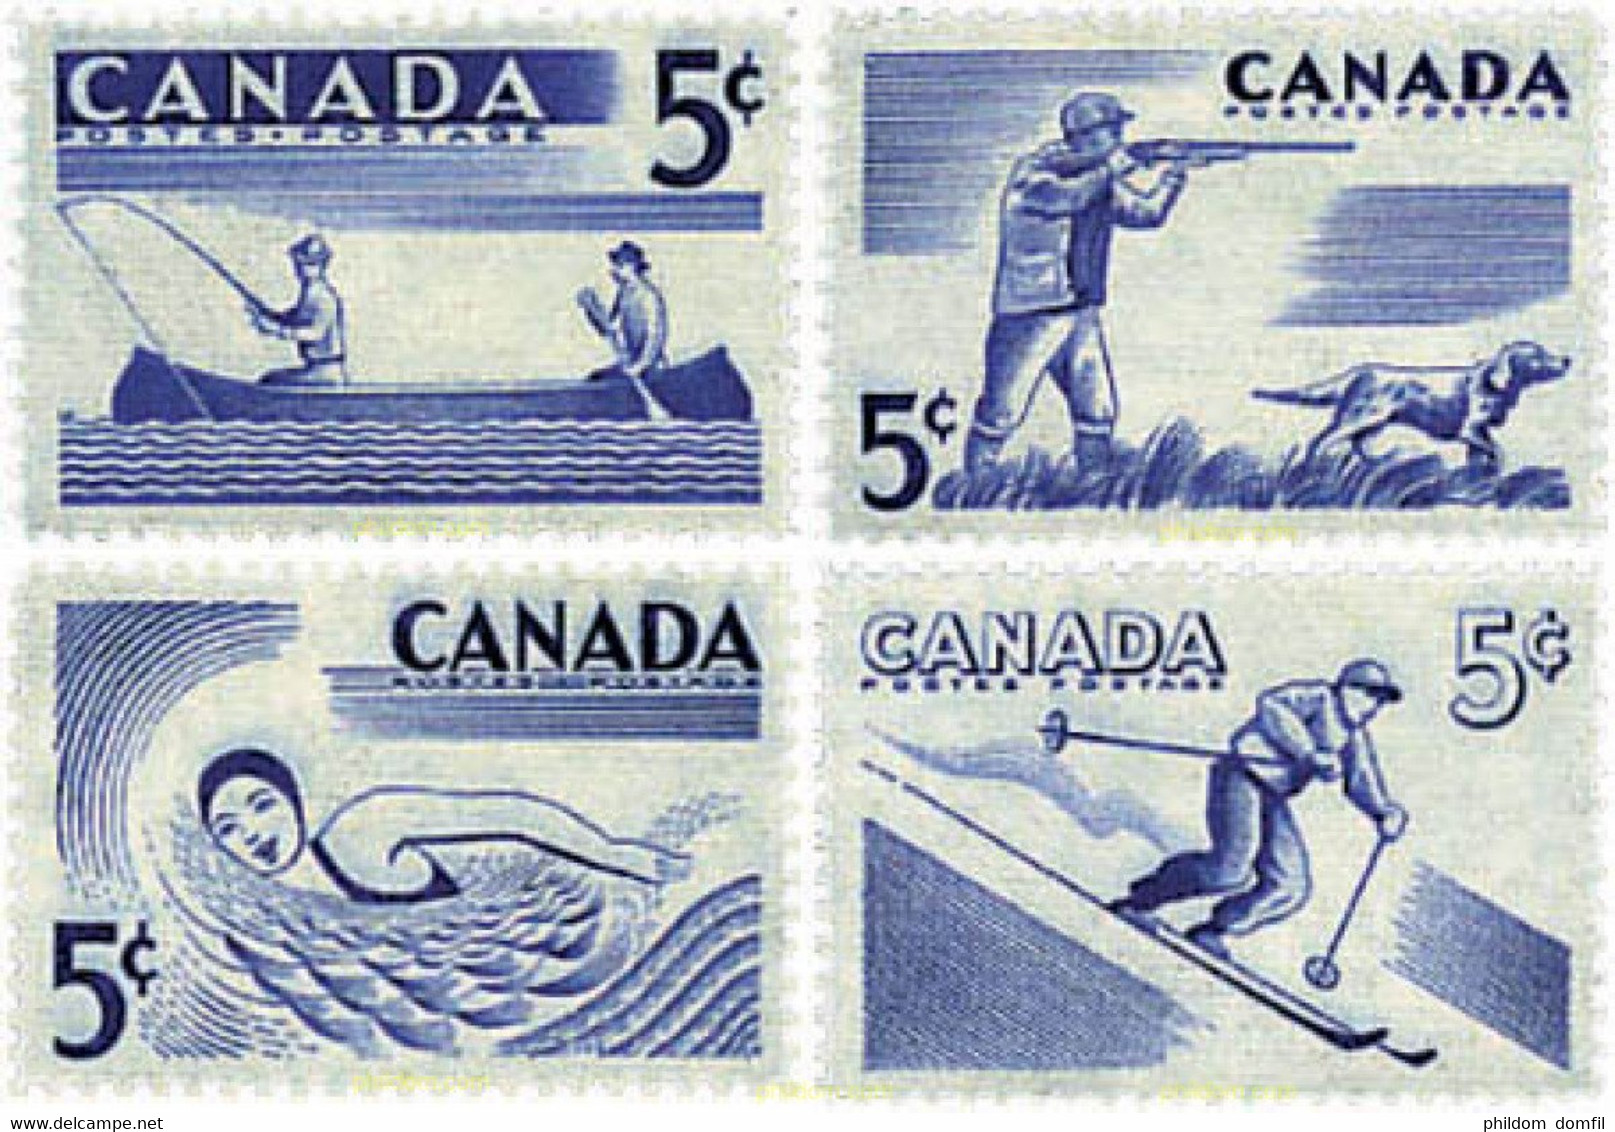 299421 HINGED CANADA 1957 DEPORTES AL AIRE LIBRE - 1952-1960